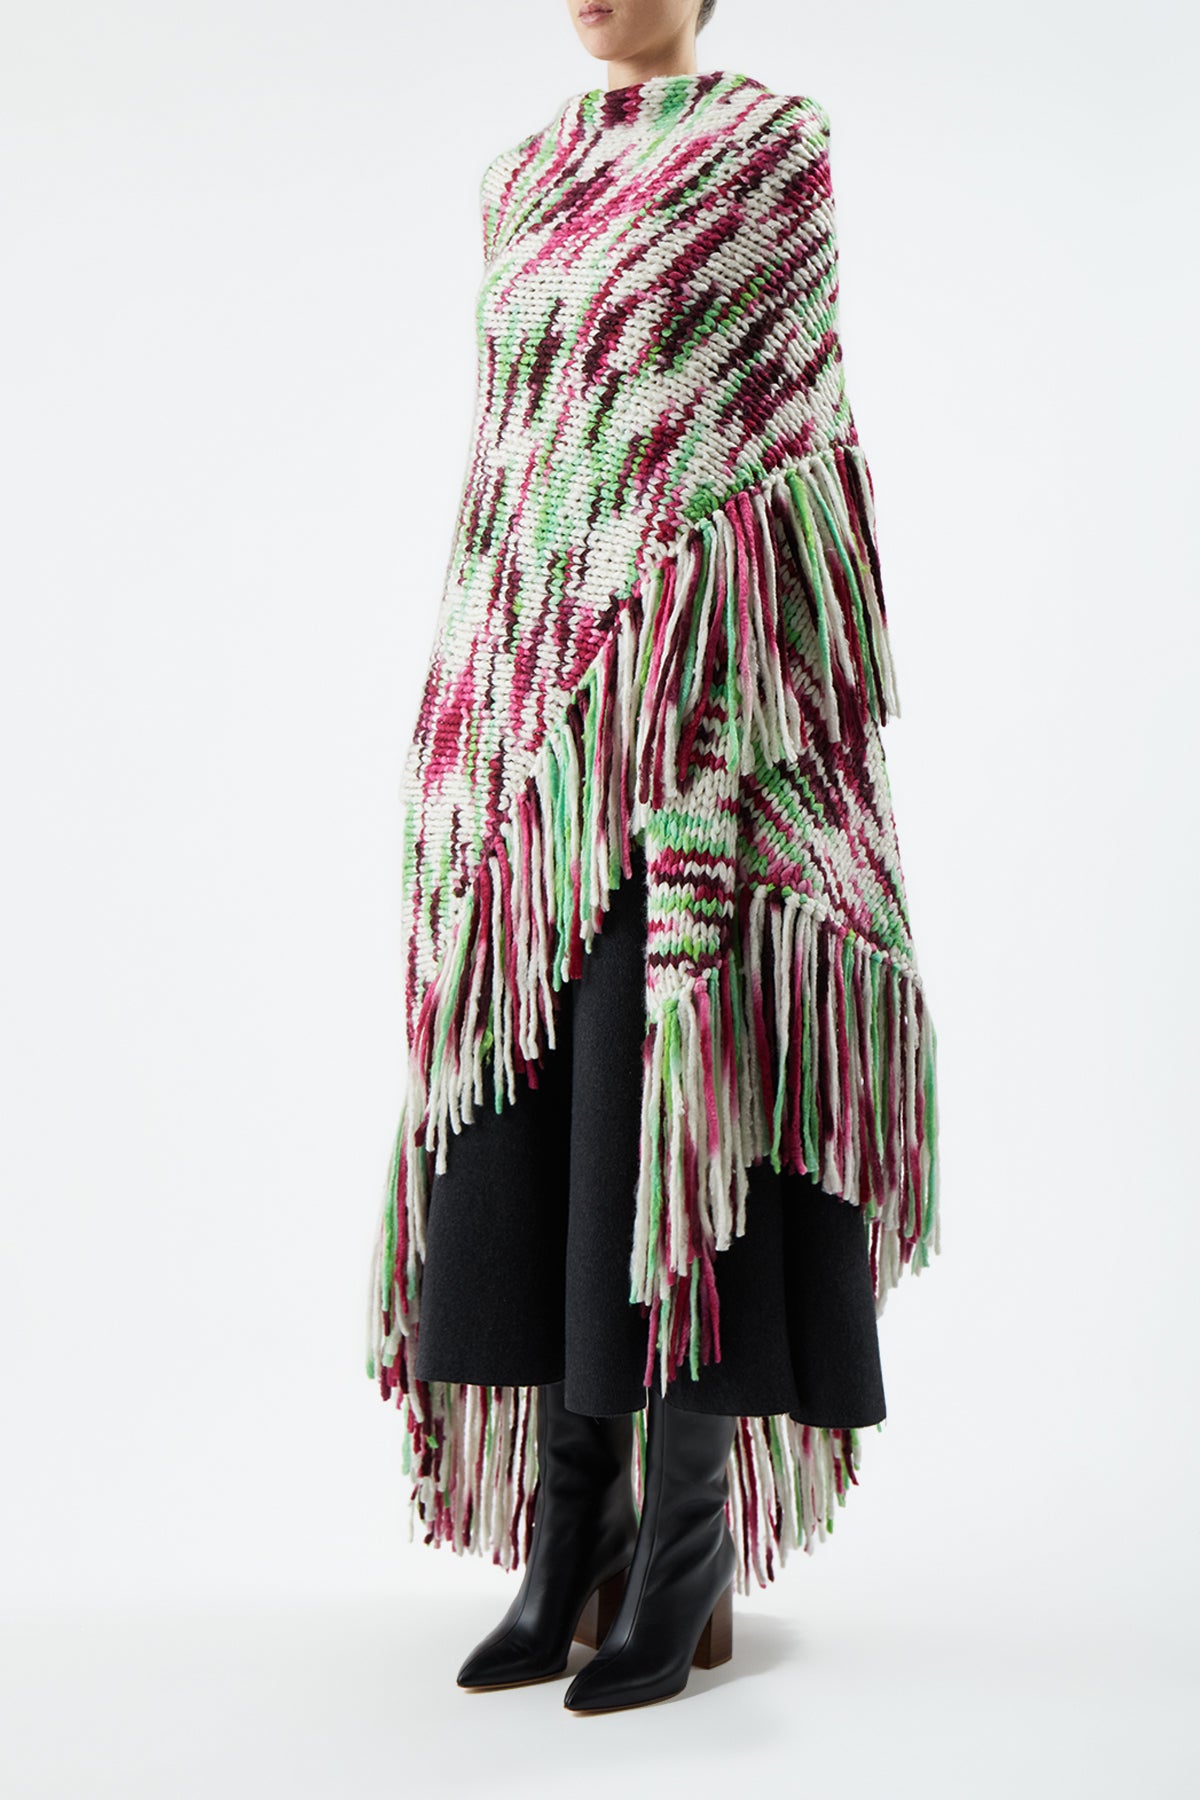 Lauren Space Dye Knit Wrap in Jewel Multi Welfat Cashmere